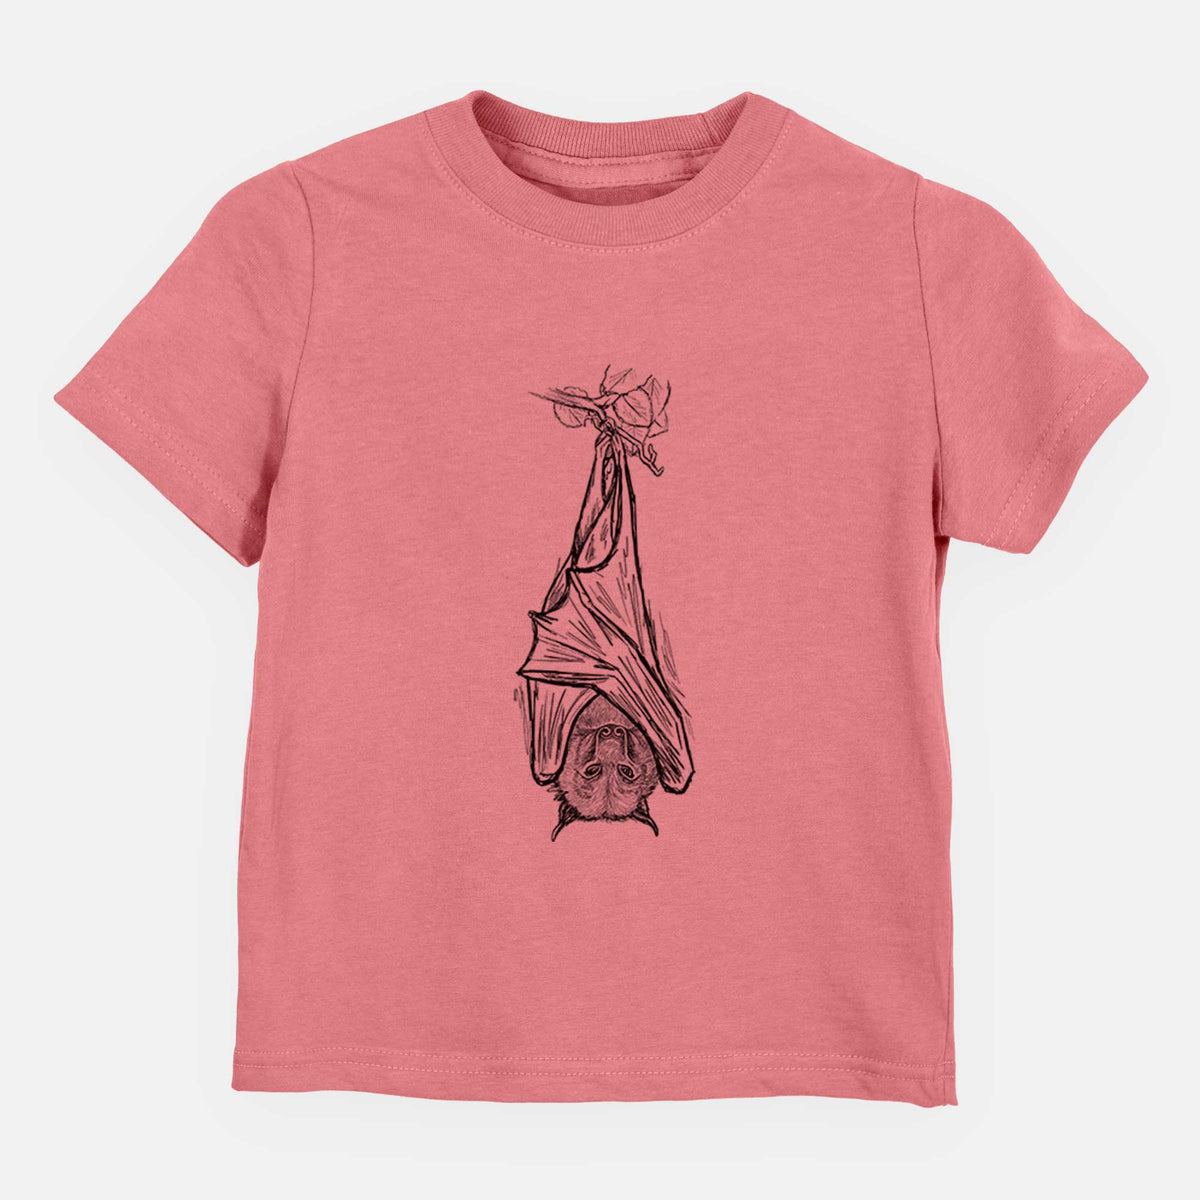 Pteropus vampyrus - Large Flying Fox - Kids Shirt